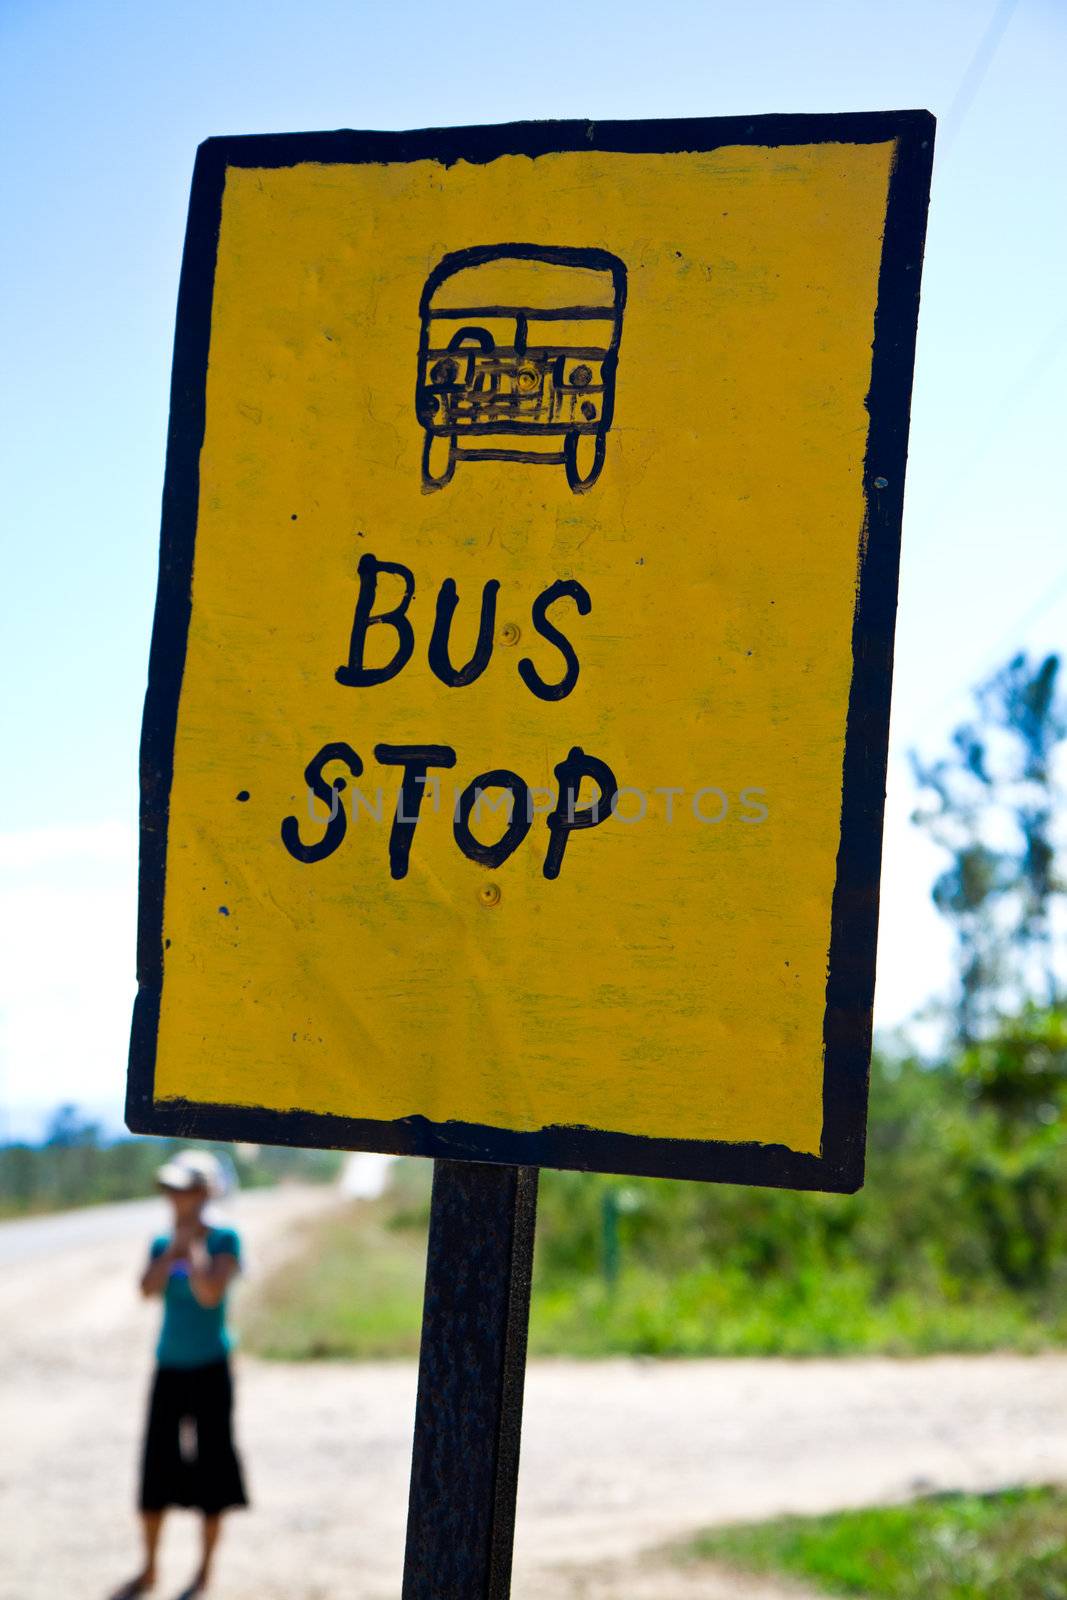 Bus stop by MojoJojoFoto